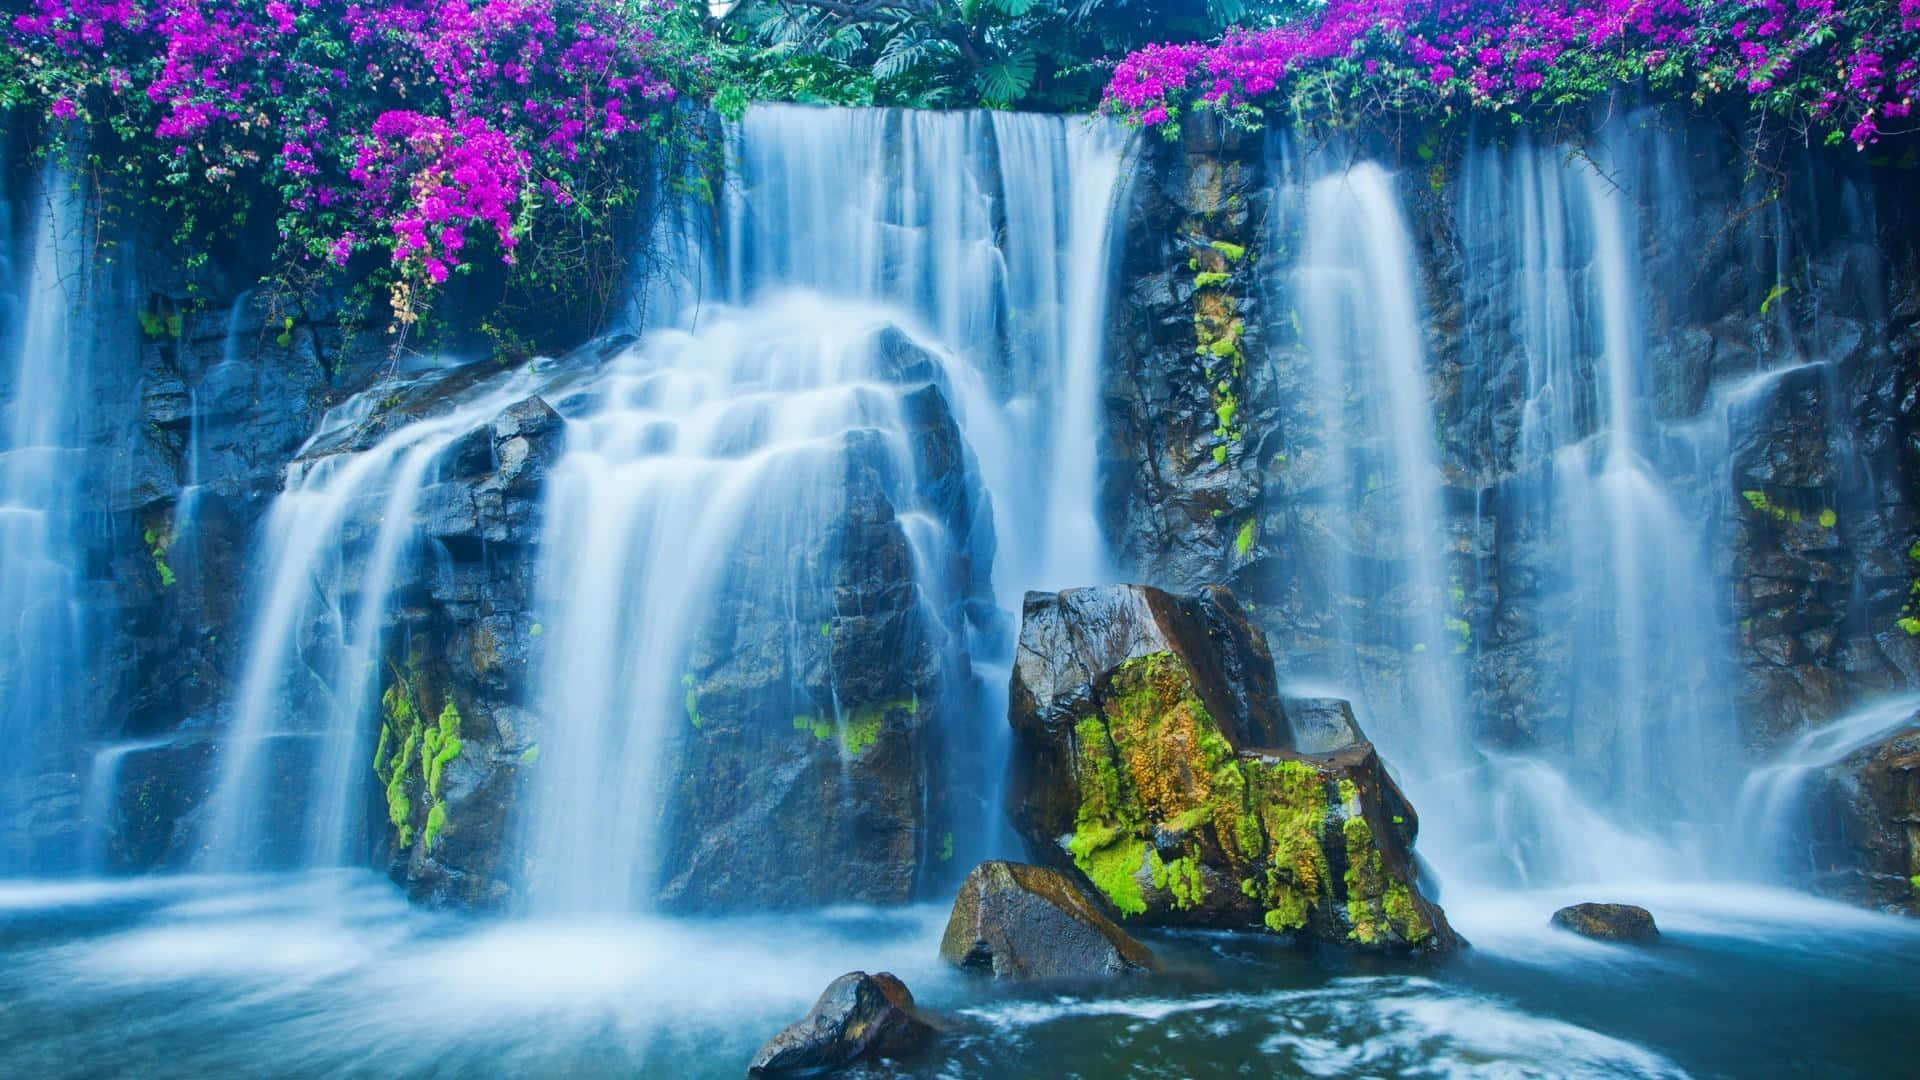 Erkundensie Die Schönheit Der Natur Mit Diesem Atemberaubenden Bild Eines Majestätischen Wasserfalls.